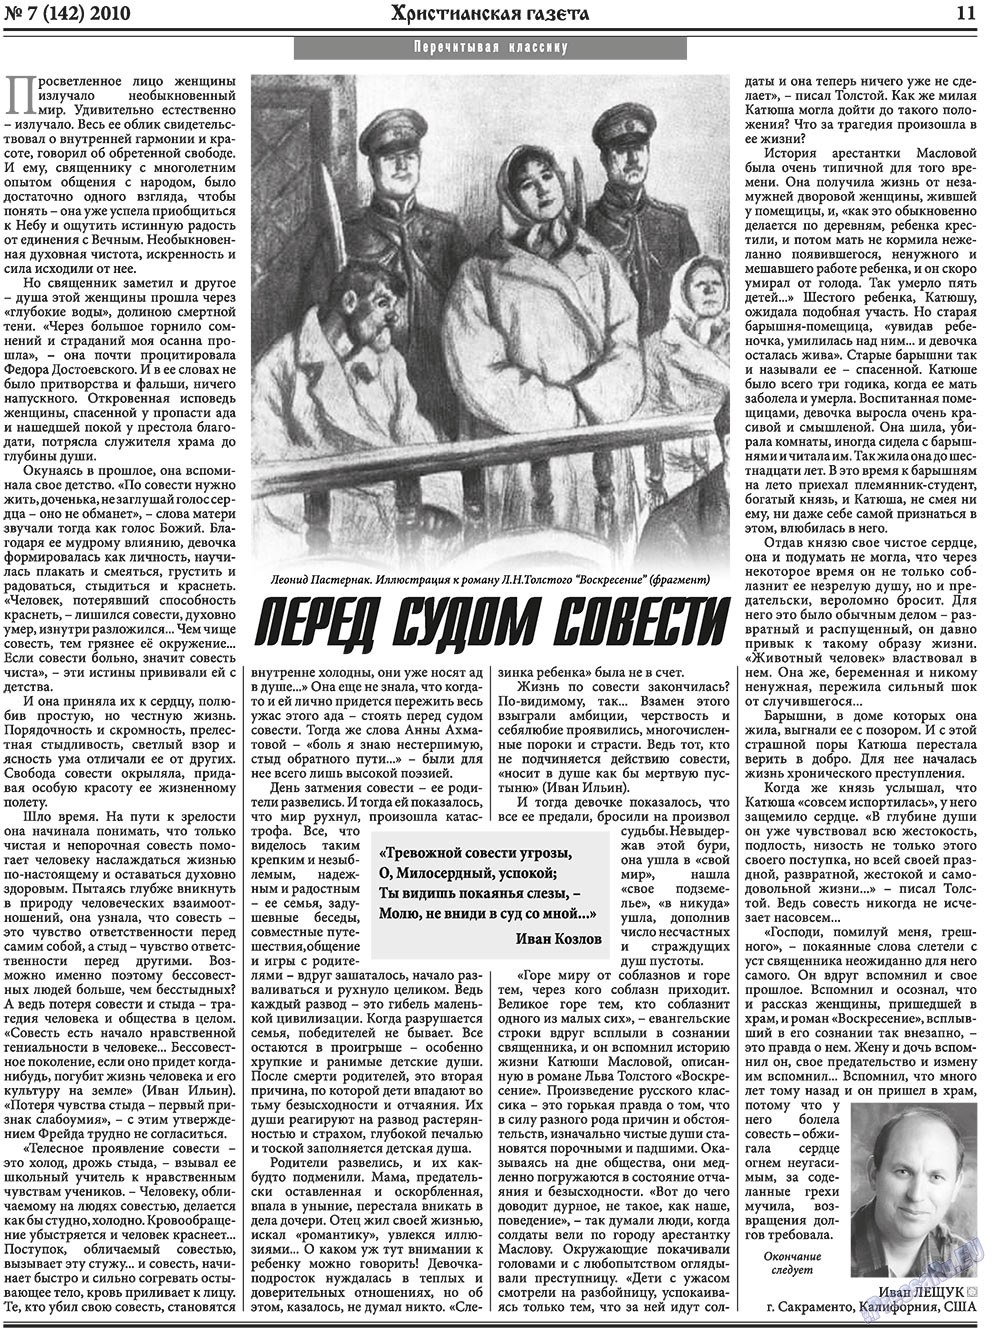 Христианская газета, газета. 2010 №7 стр.11